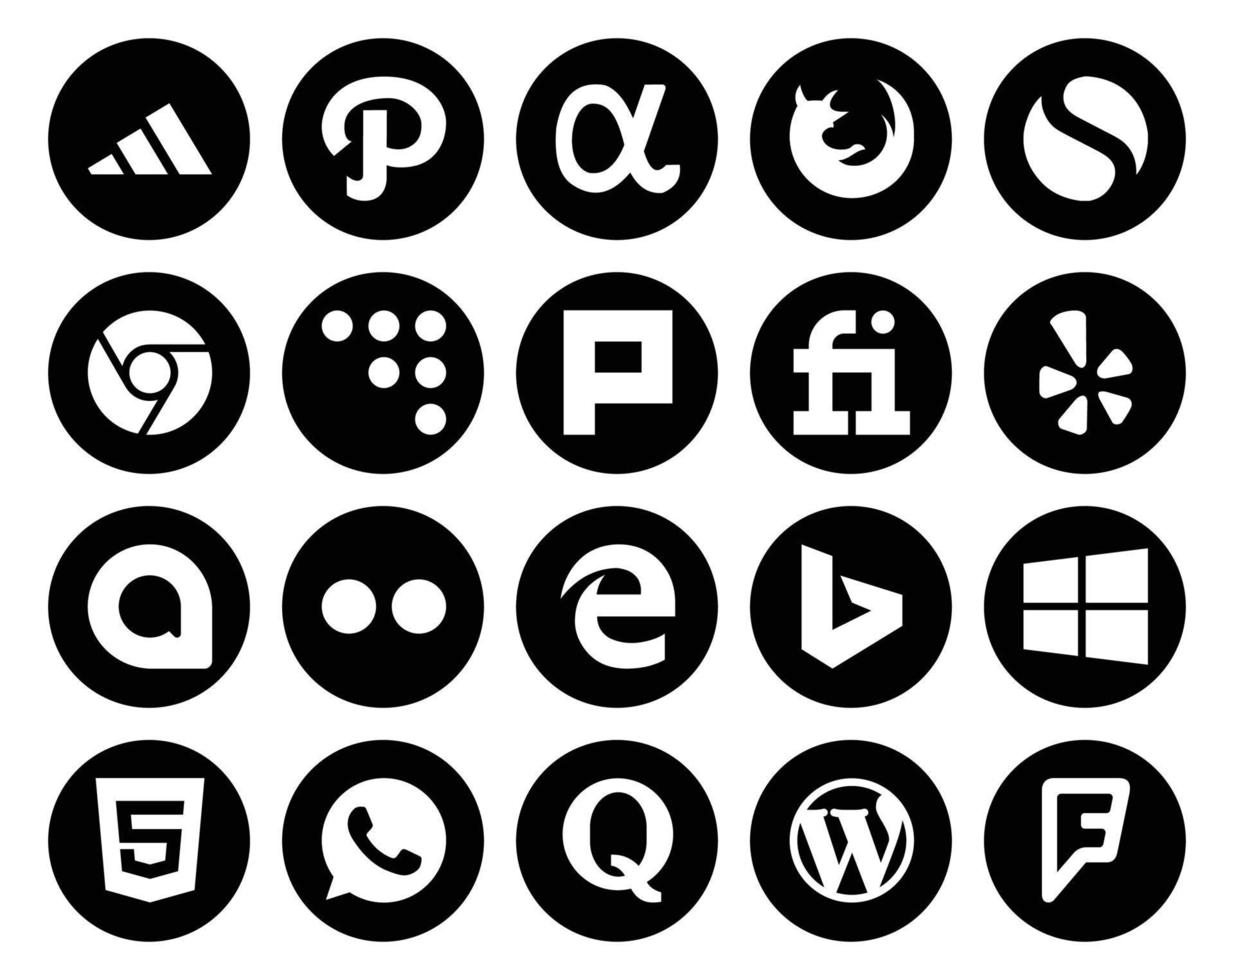 paquete de 20 íconos de redes sociales que incluye whatsapp windows plurk bing flickr vector